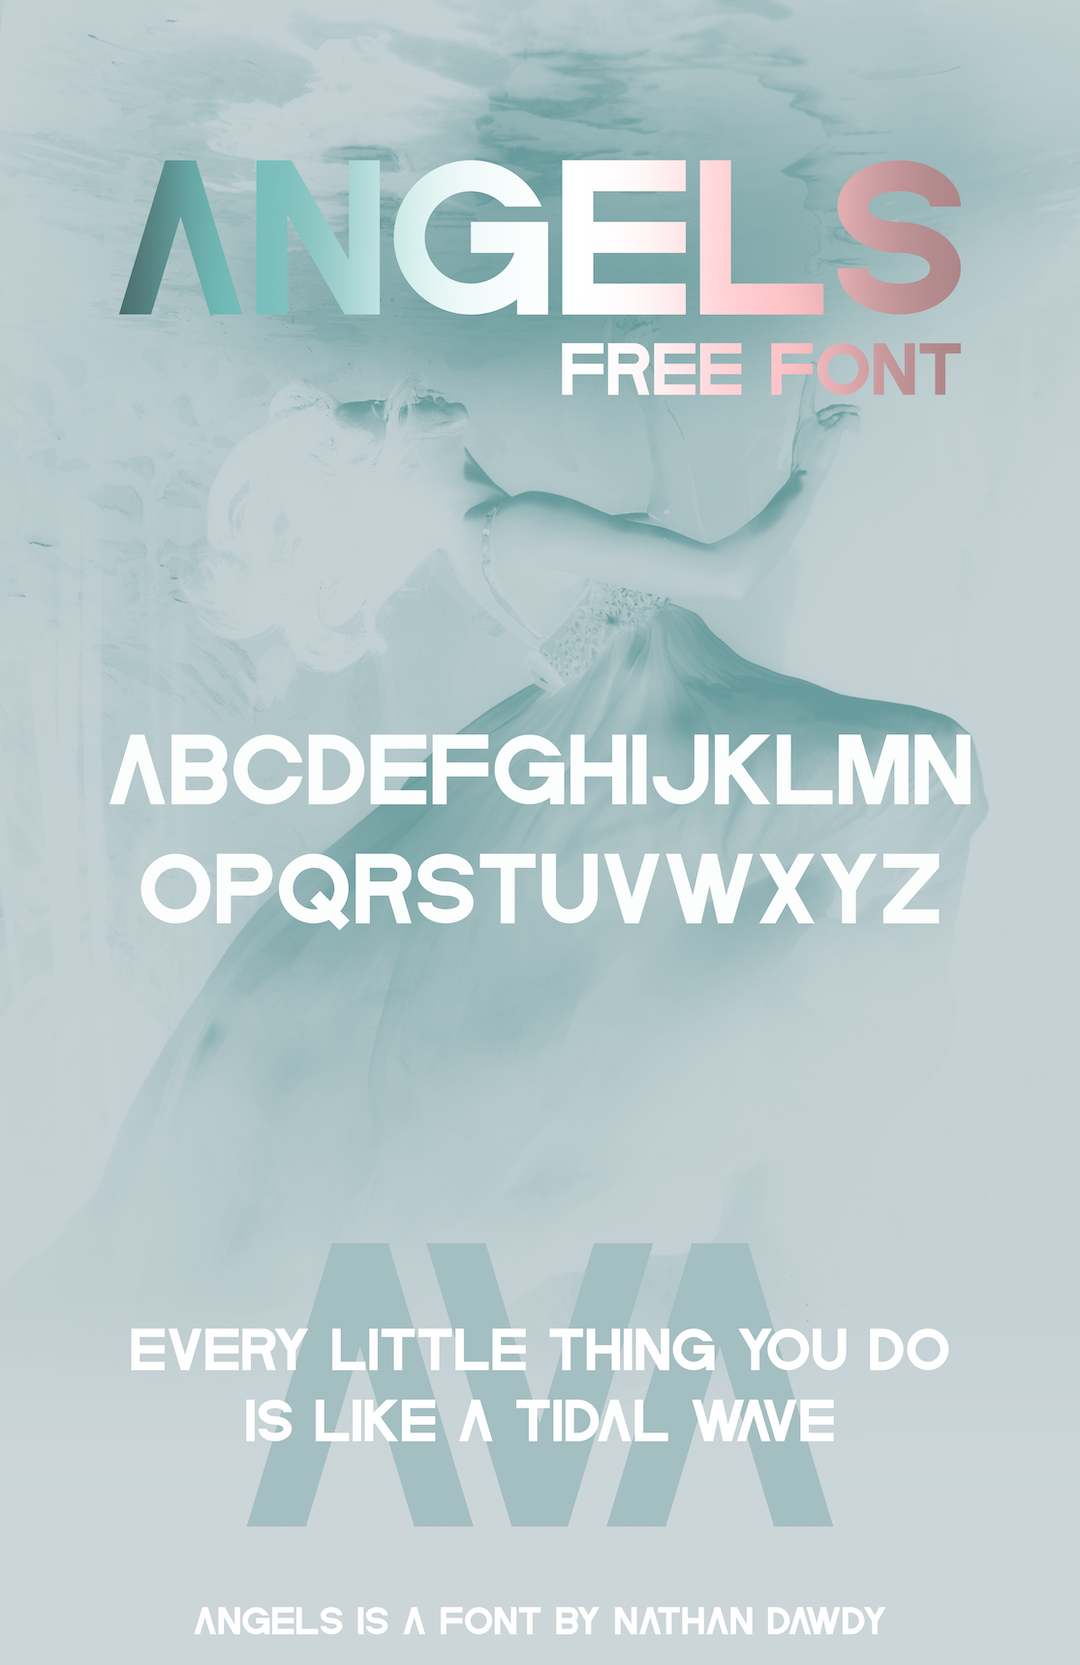 Angels |. Free Font